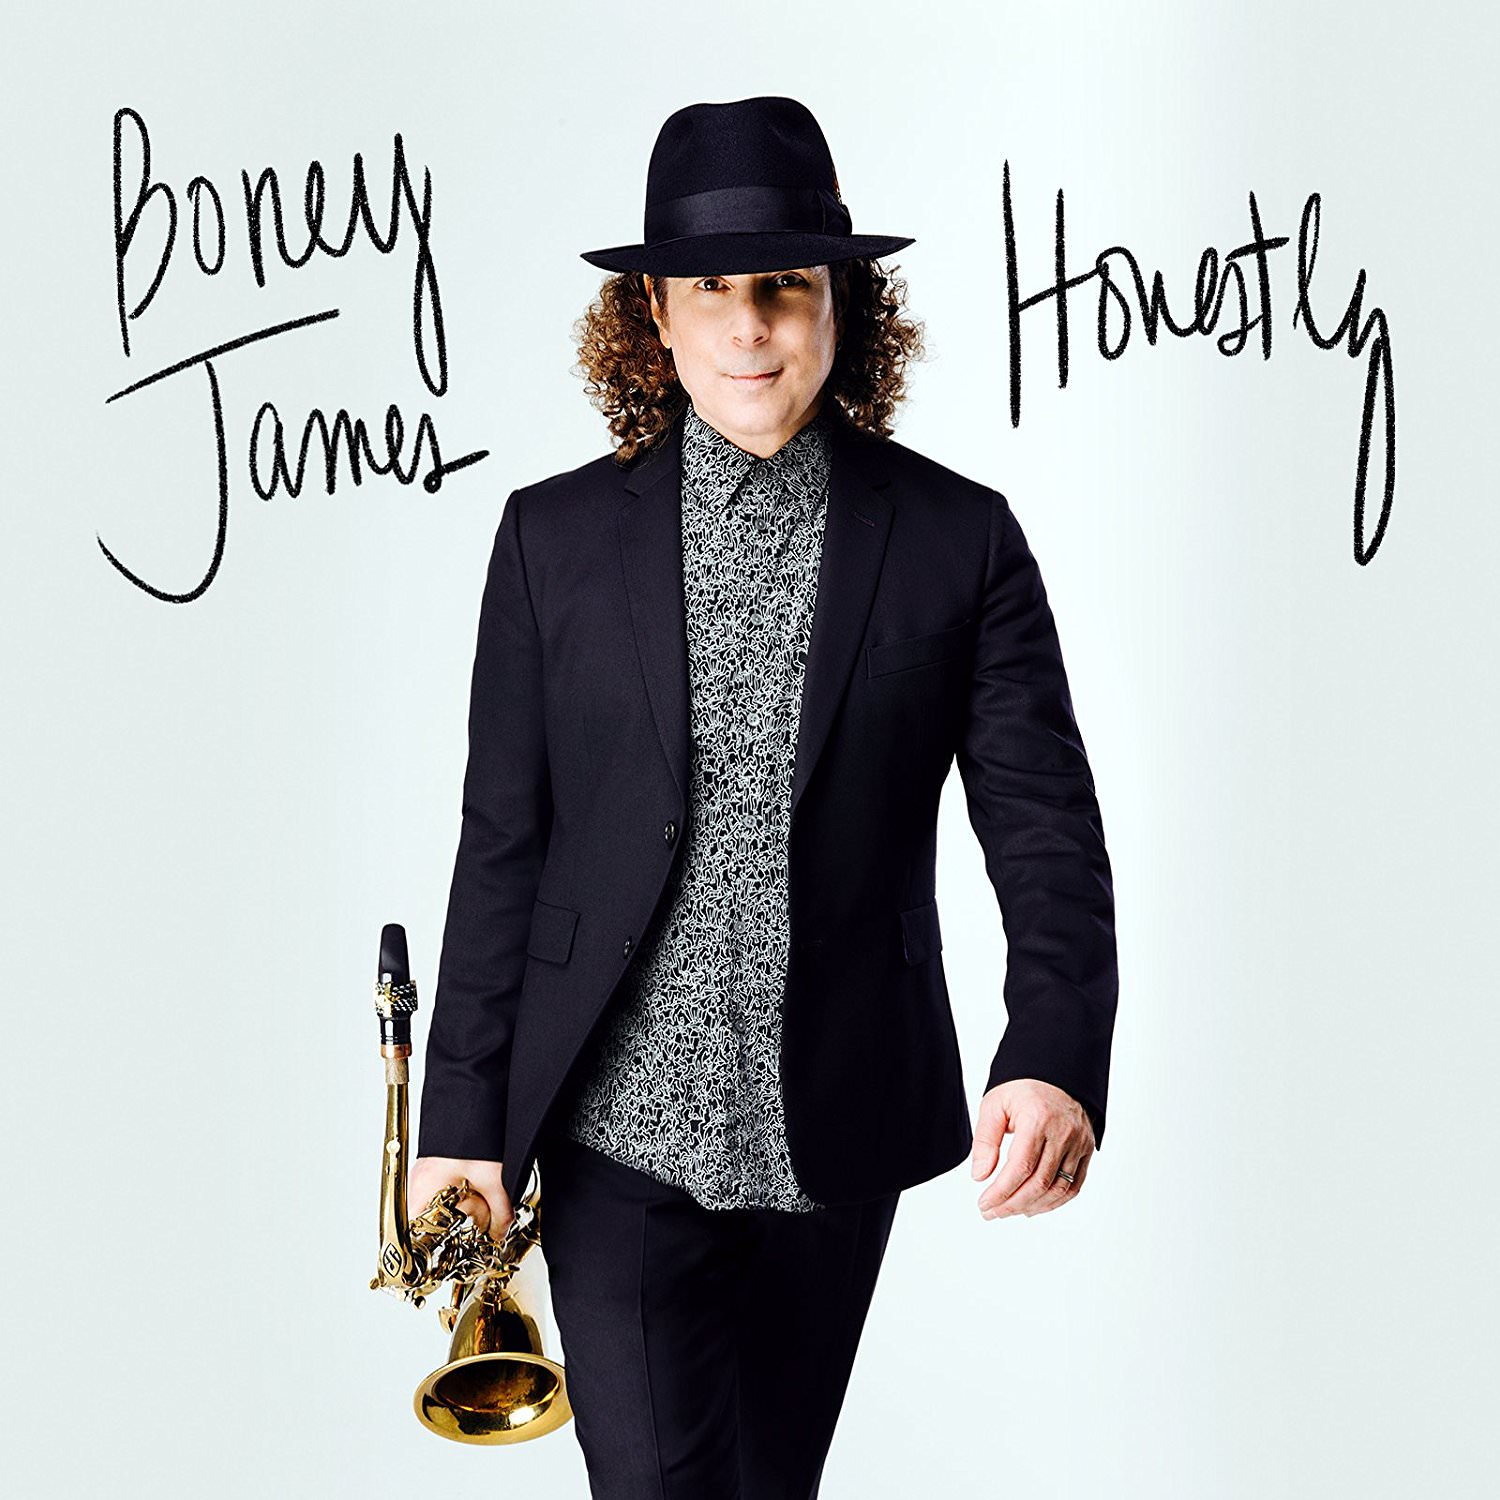 Boney James - Honestly (2017) [Qobuz FLAC 24bit/44,1kHz]